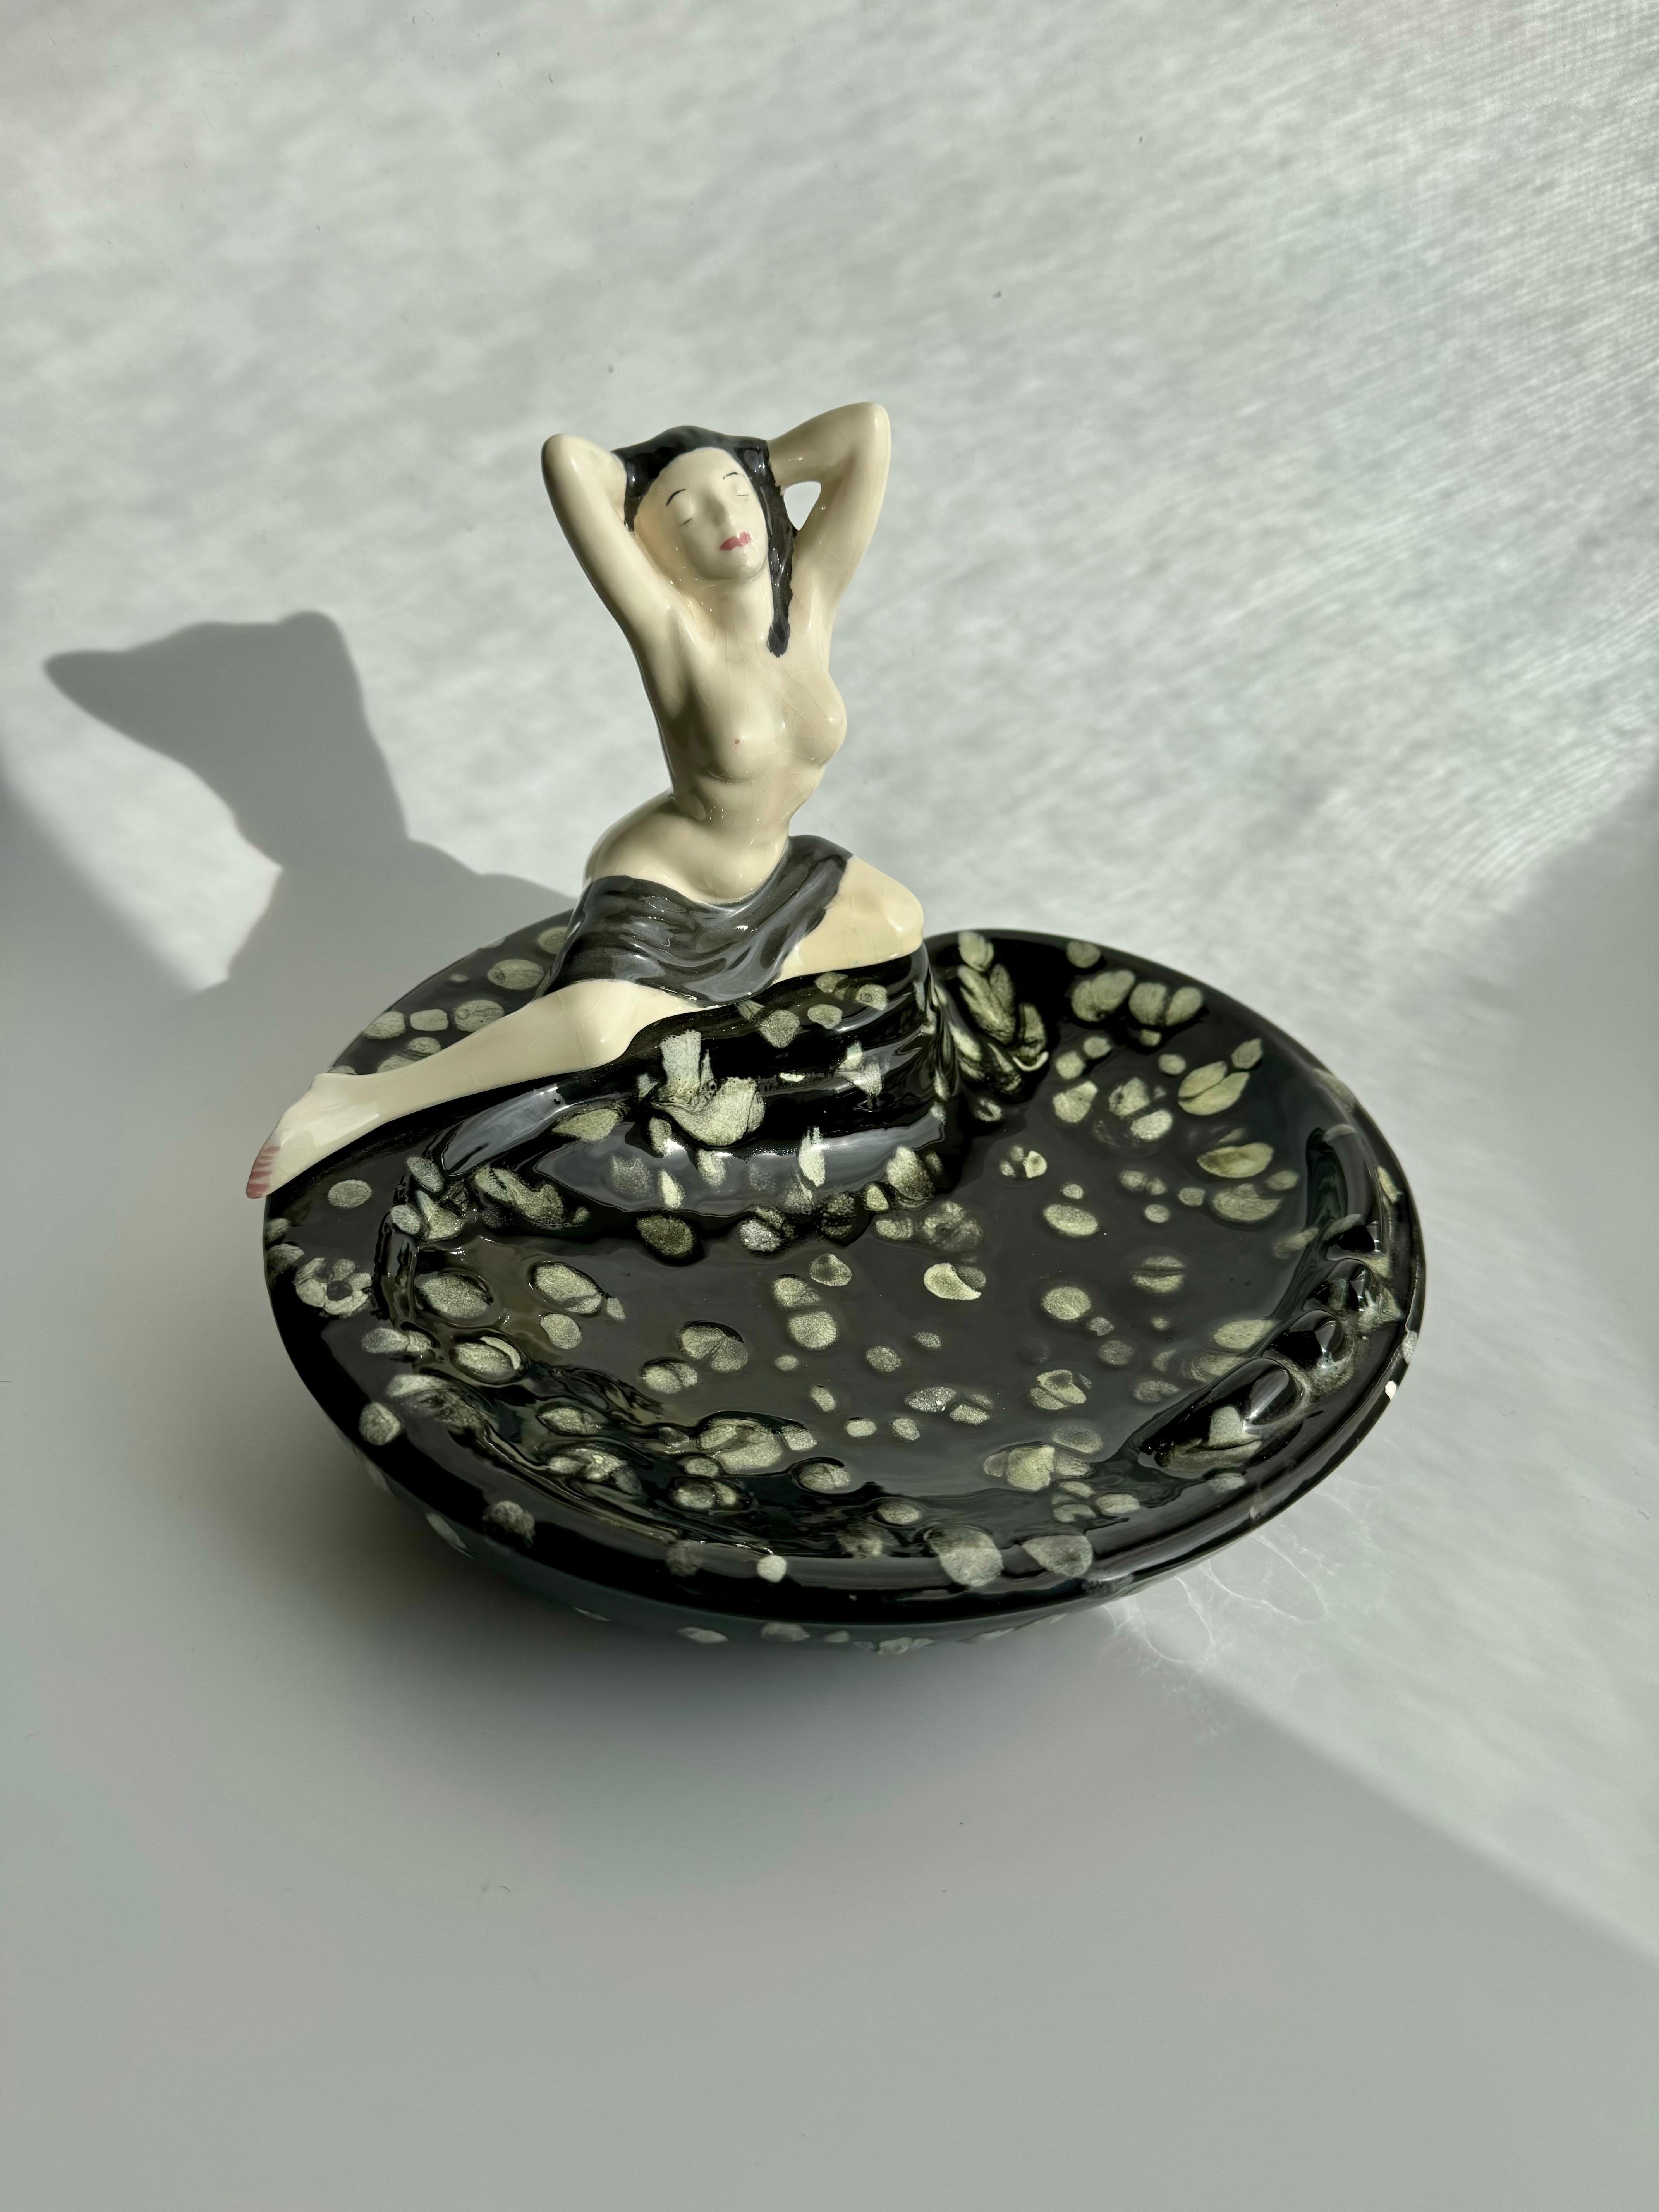 Atemberaubender Aschenbecher aus der Mitte des Jahrhunderts mit dem nackten weiblichen Körper einer jungen Frau, die auf dem Rand der Schale sitzt. Dieses prächtige Stück ist sehr künstlerisch und könnte auf viele Arten verwendet werden, als